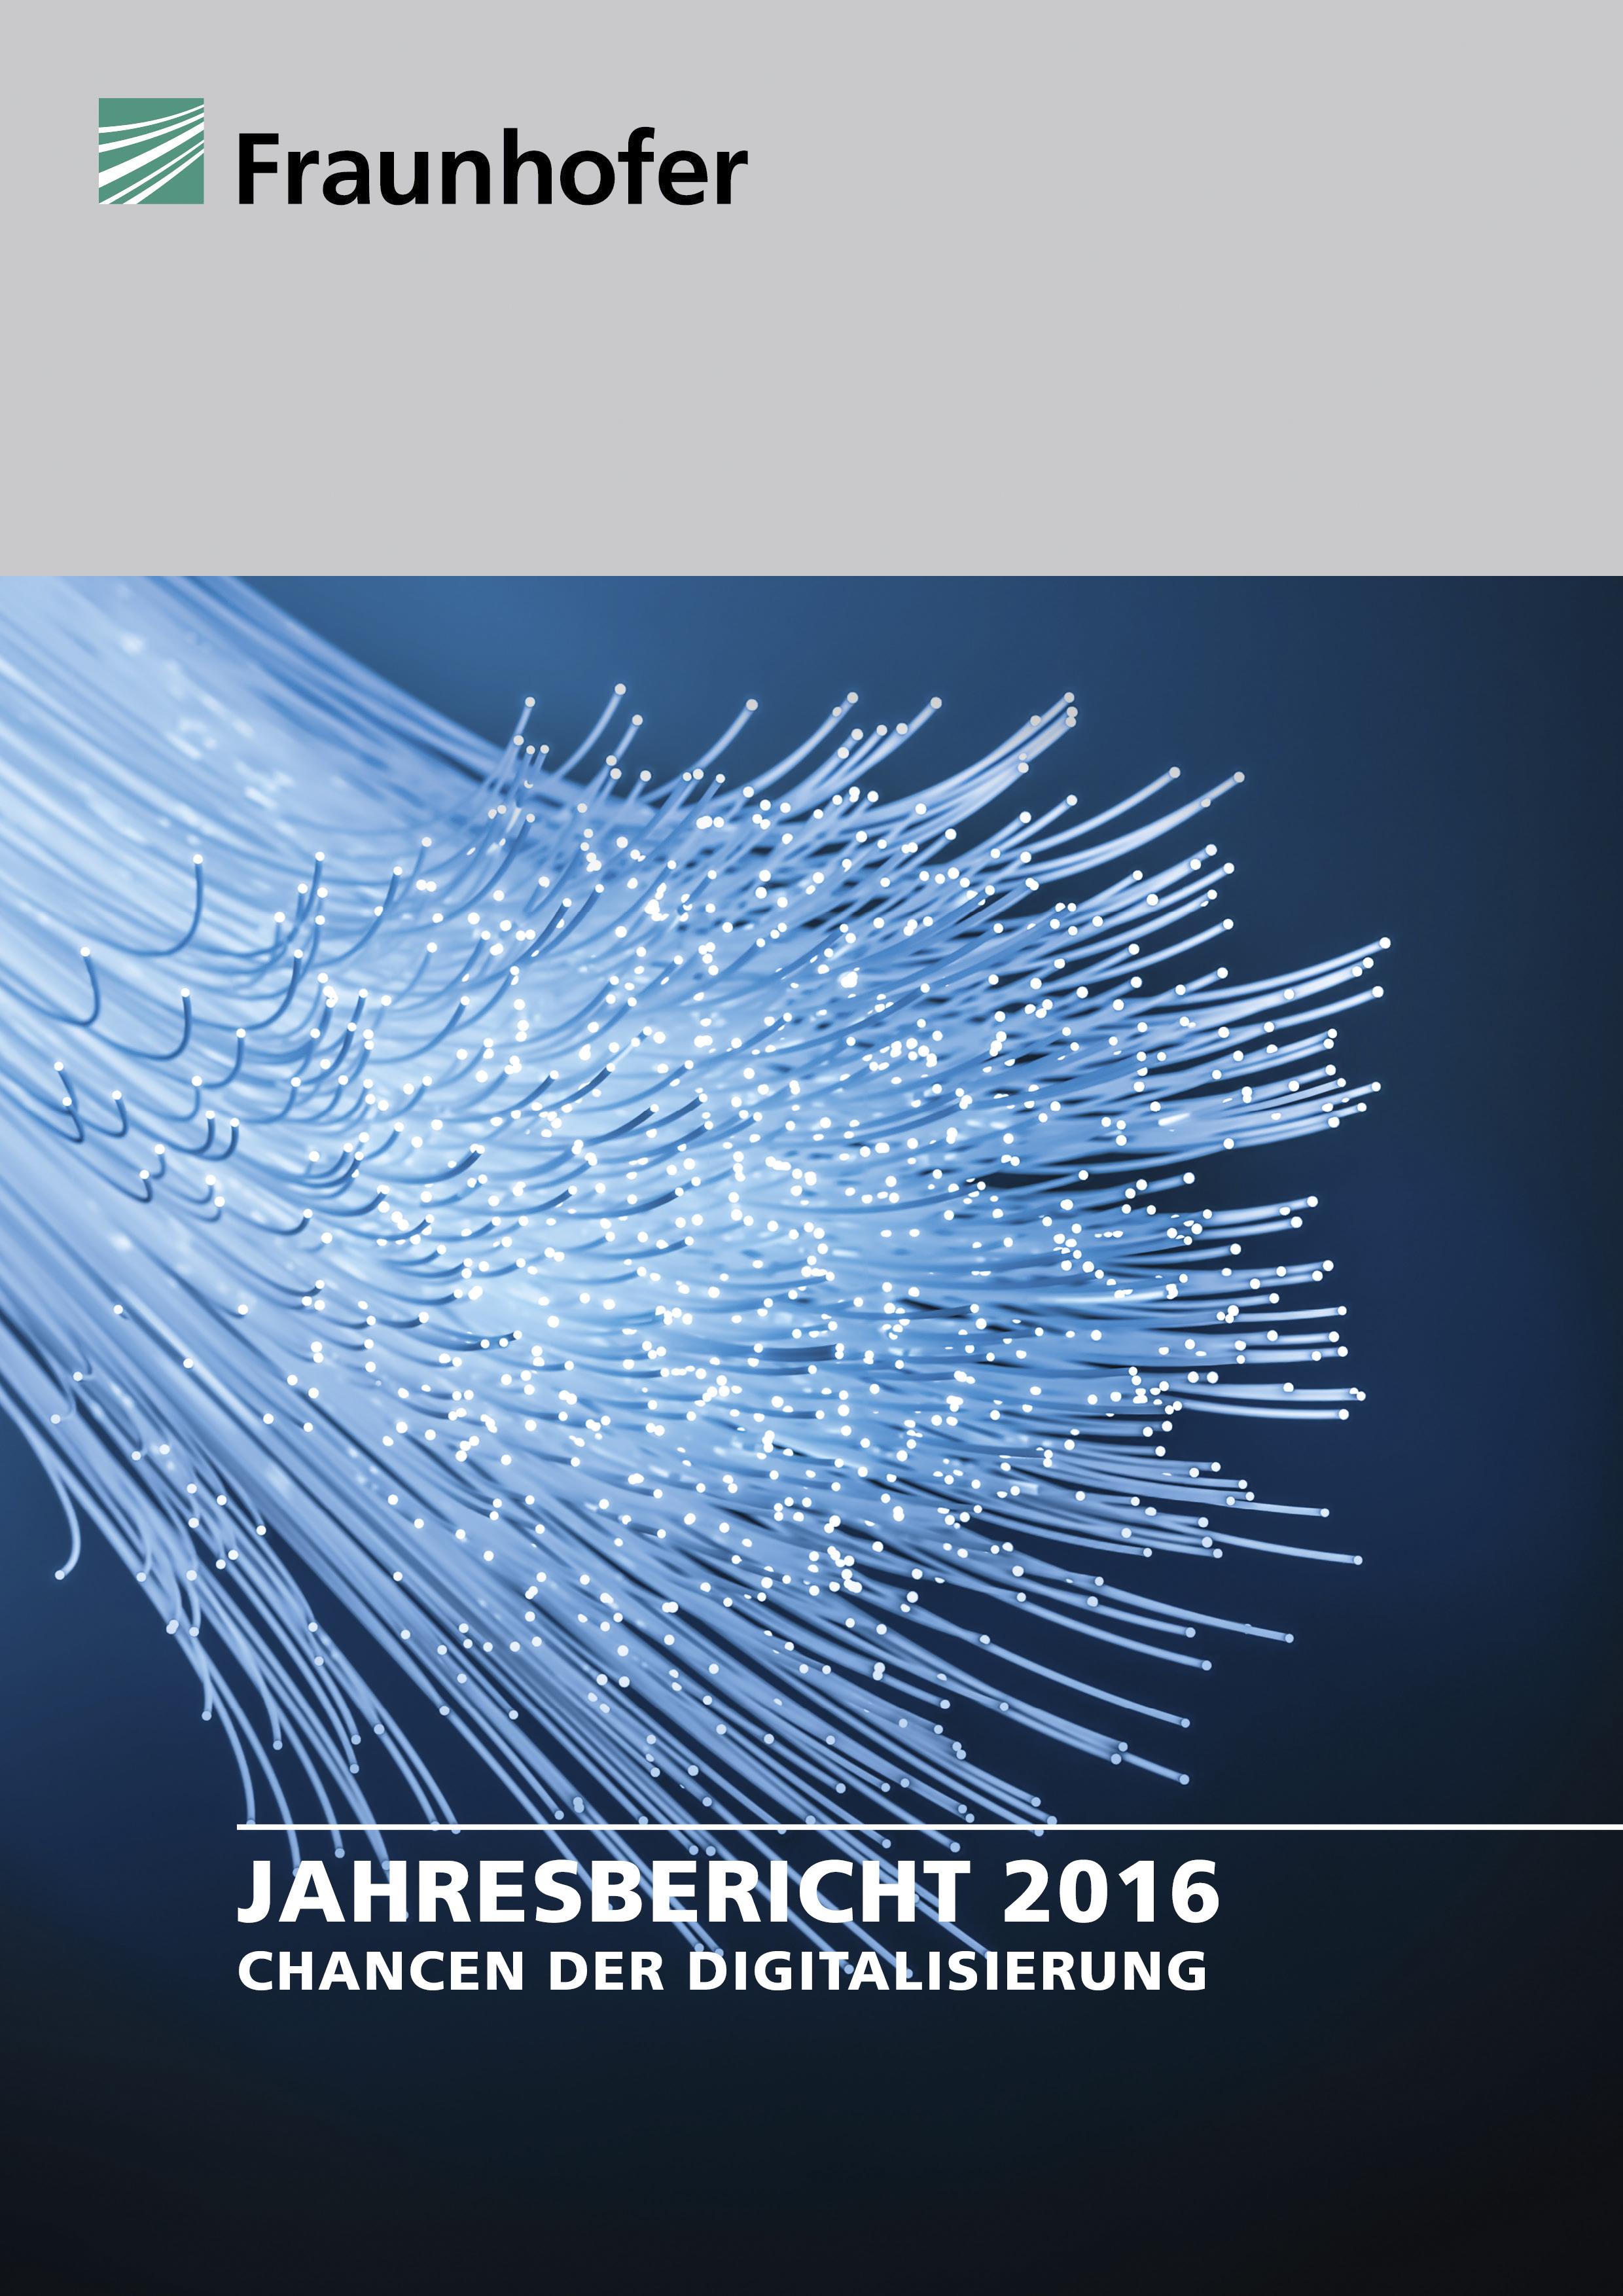 Der Fraunhofer-Jahresbericht 2016.